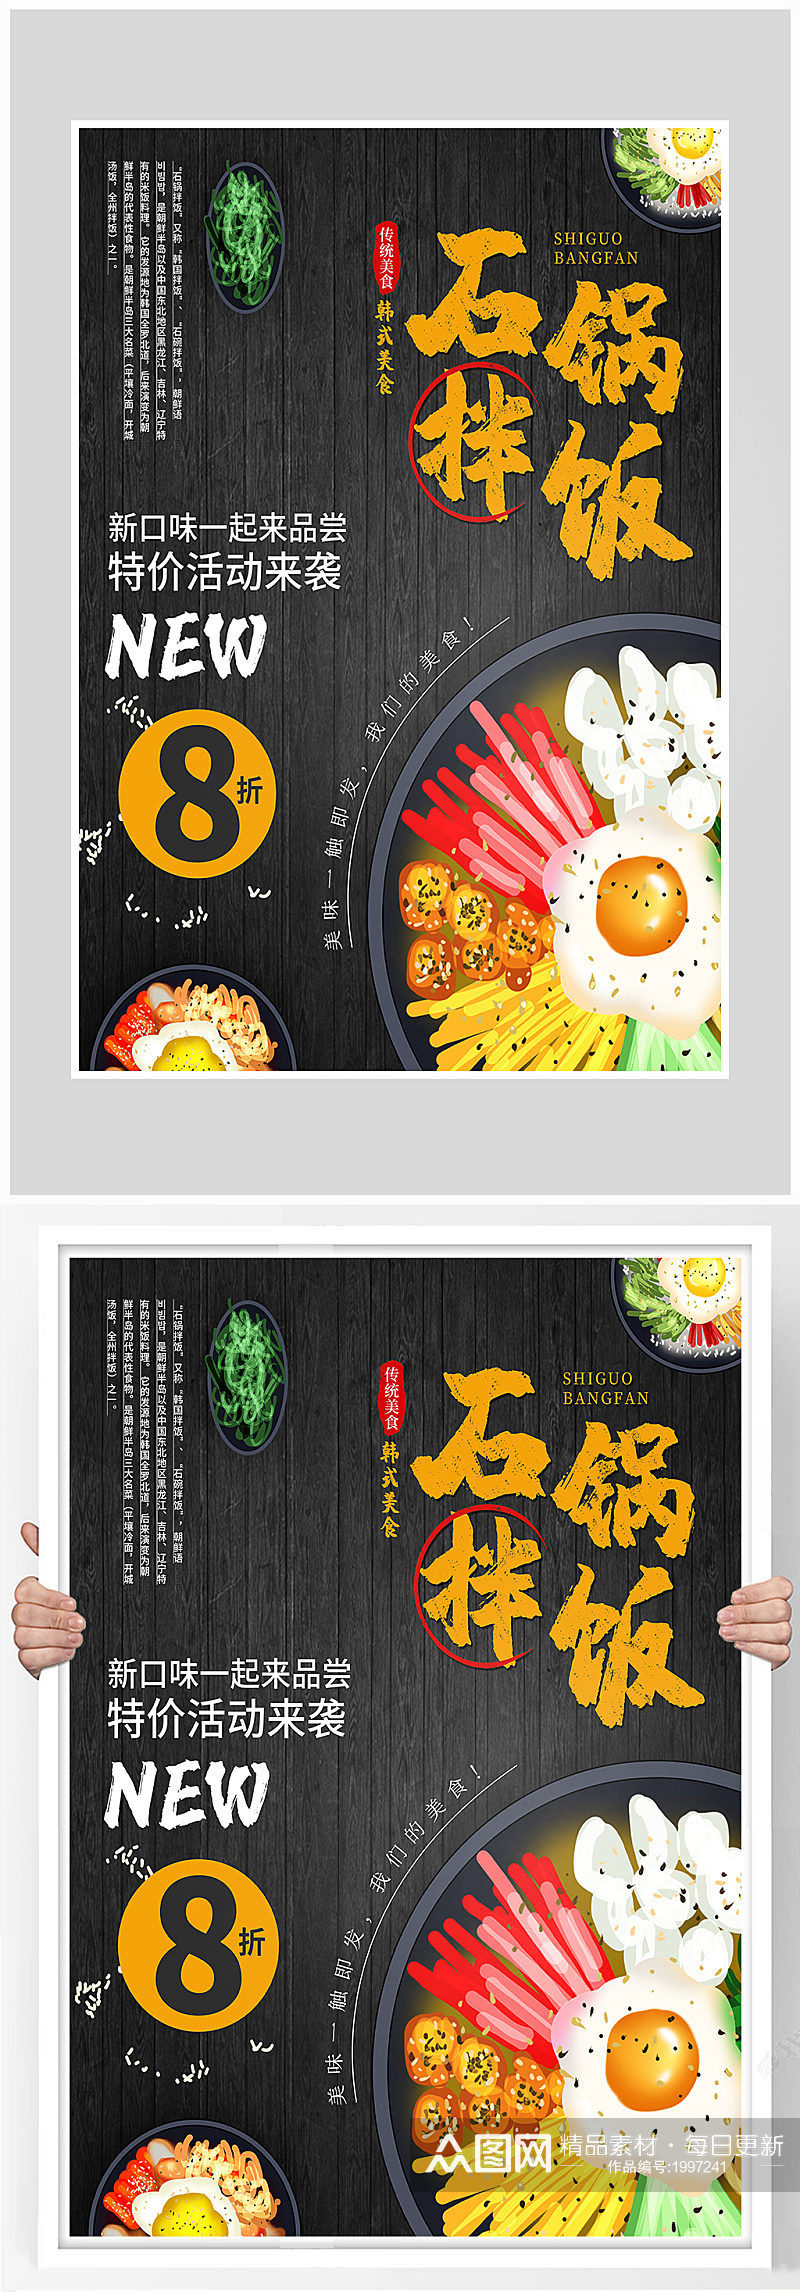 创意质感石锅拌饭料理海报设计素材